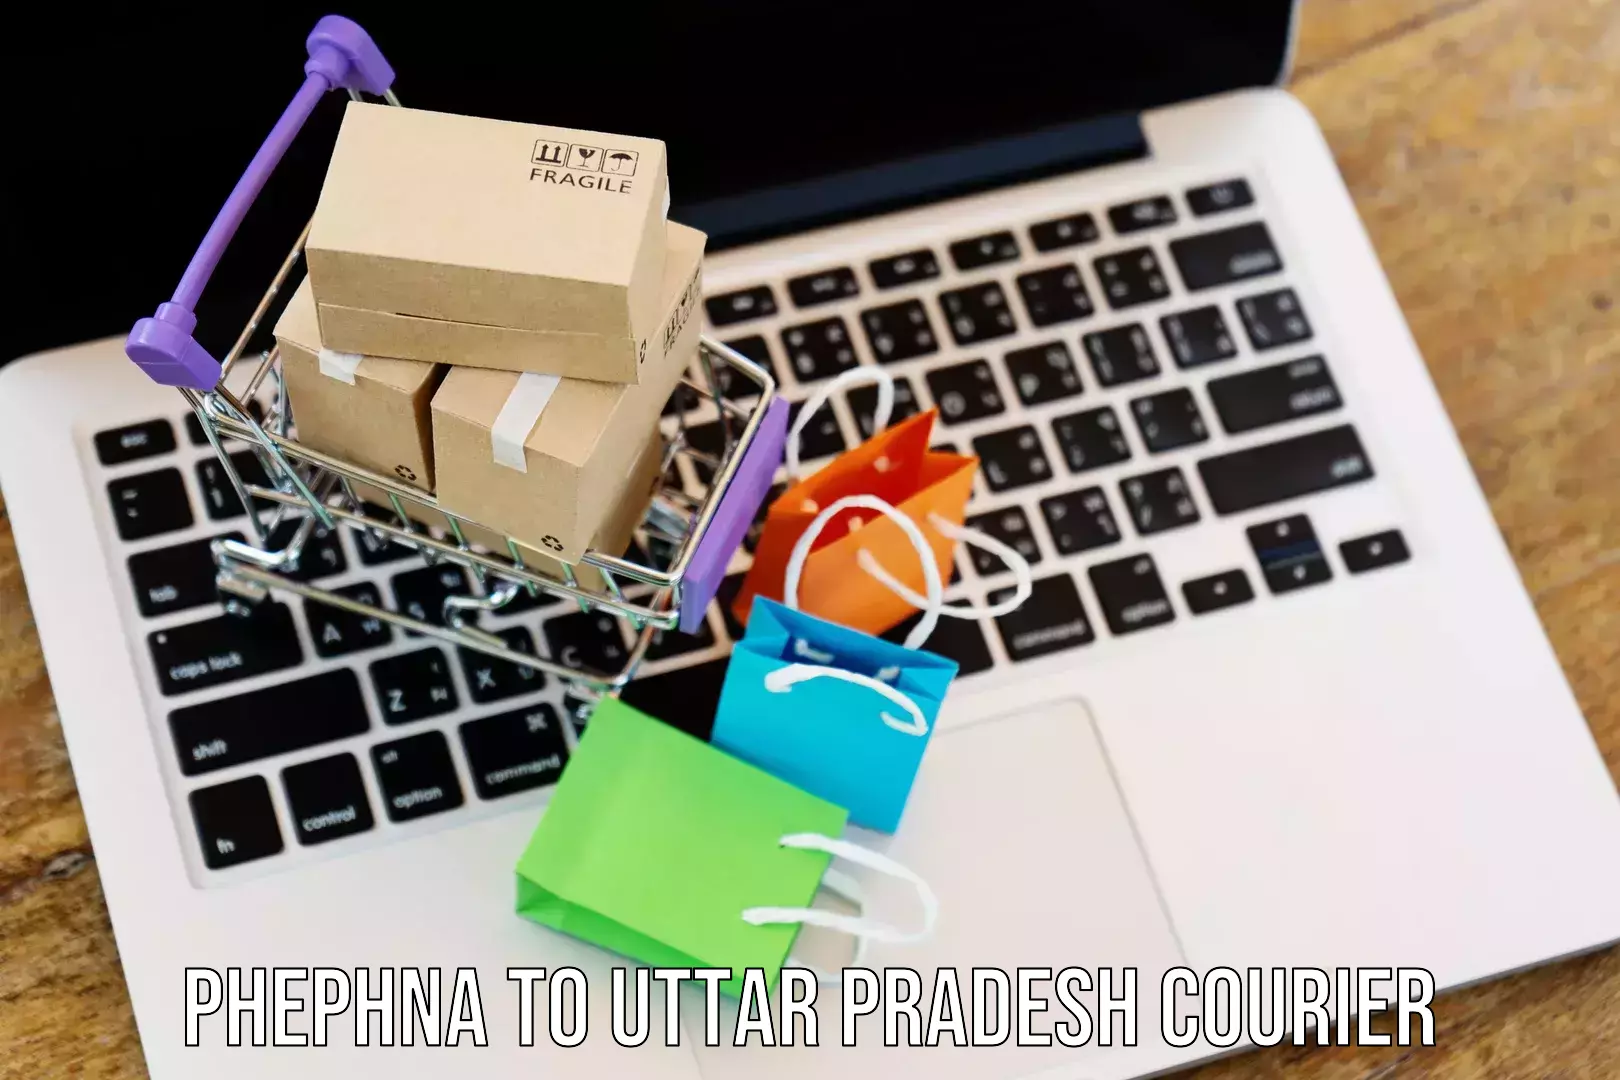 Smart courier technologies Phephna to Rasra